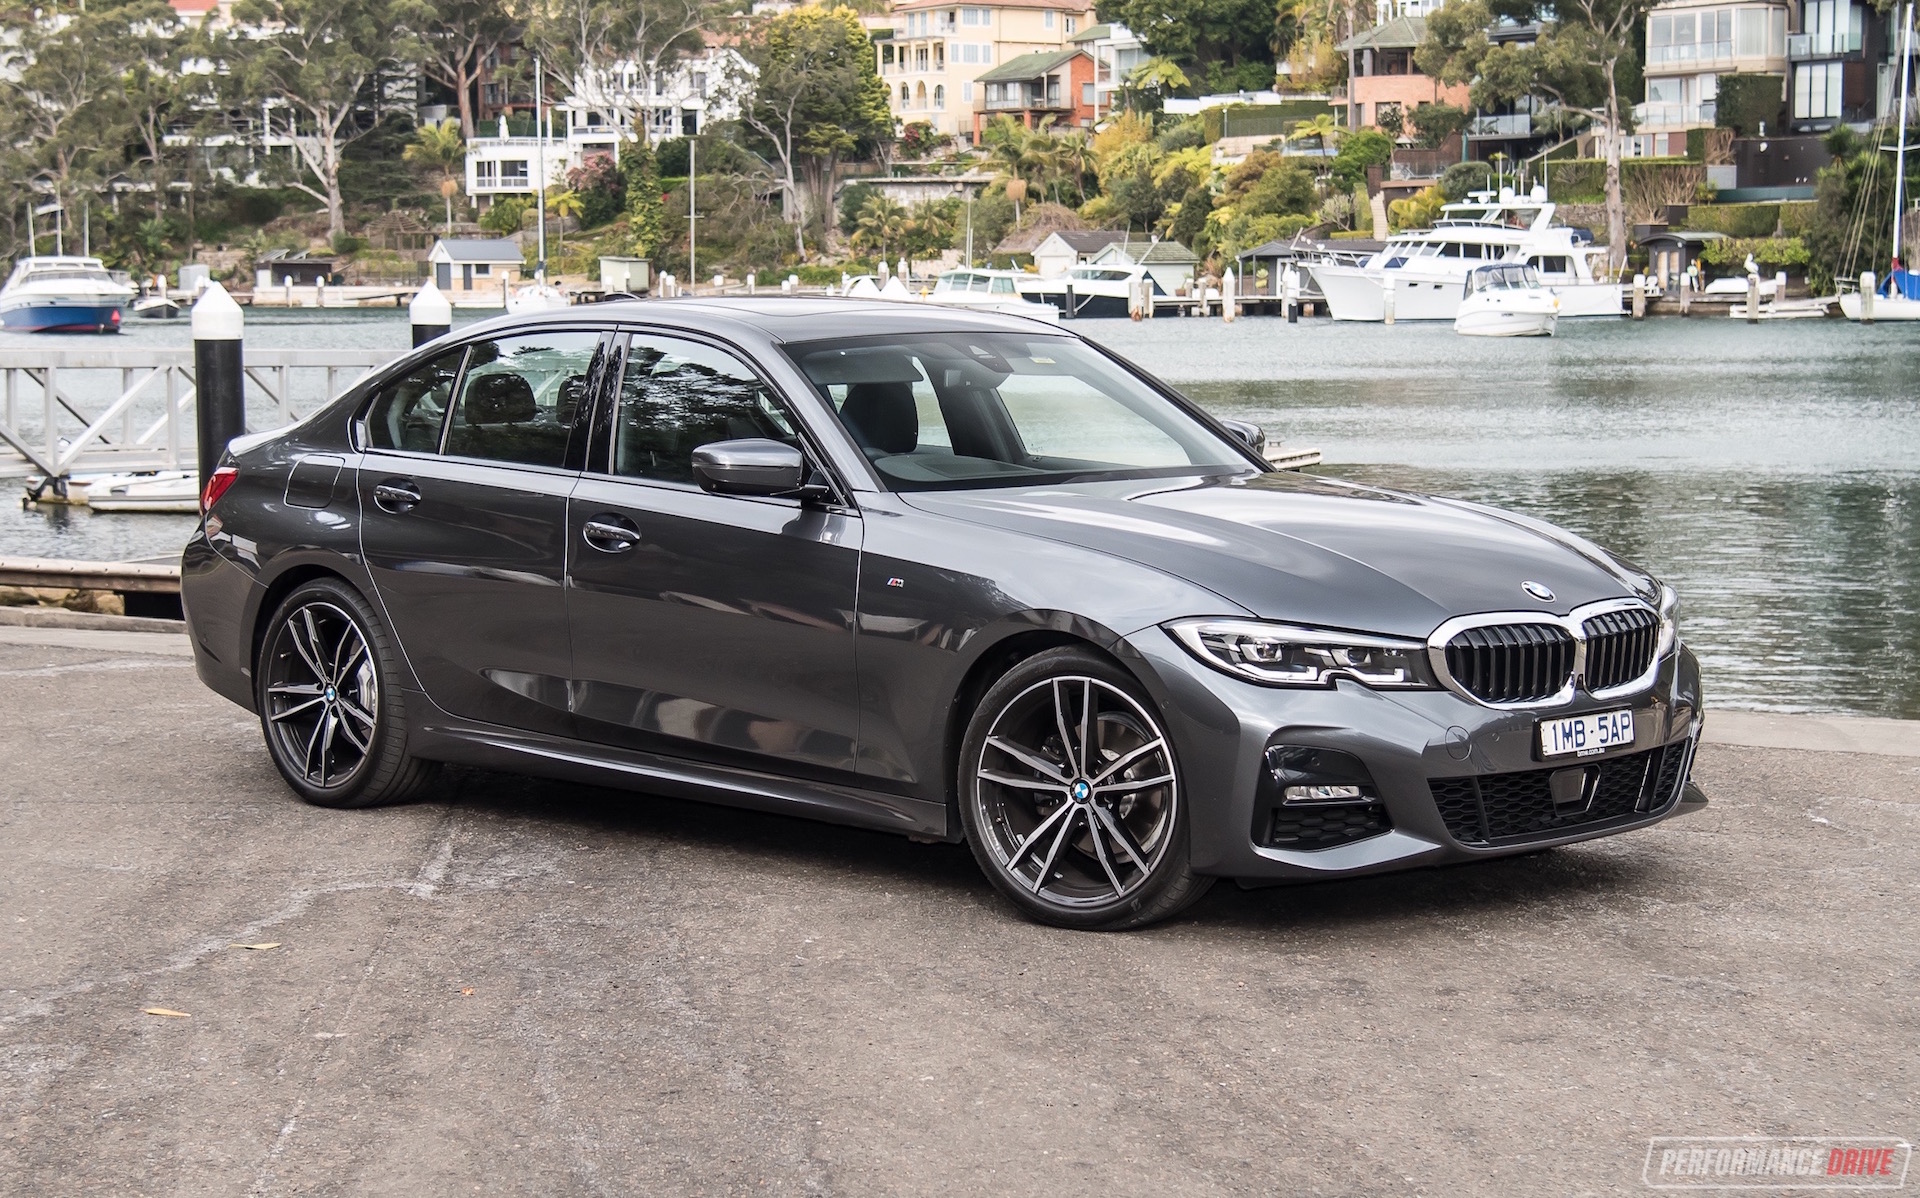 Deens Smaak werk 2019 BMW 320d M Sport review (video) - PerformanceDrive